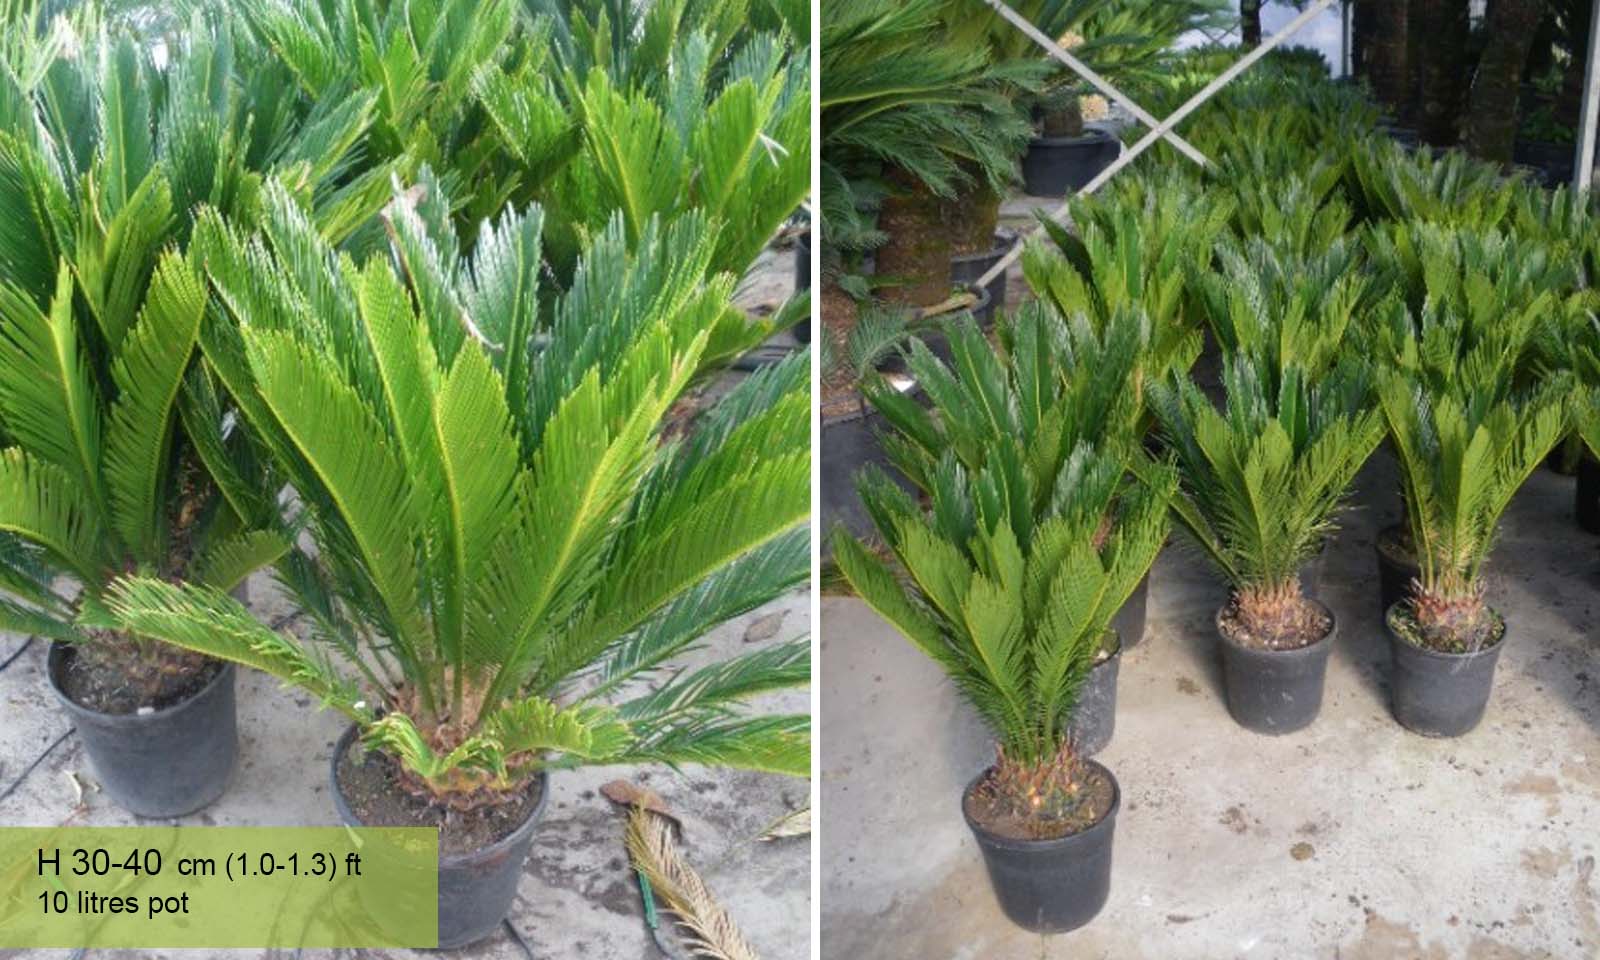 Cycas Revoluta (Sago Palm Cycad)